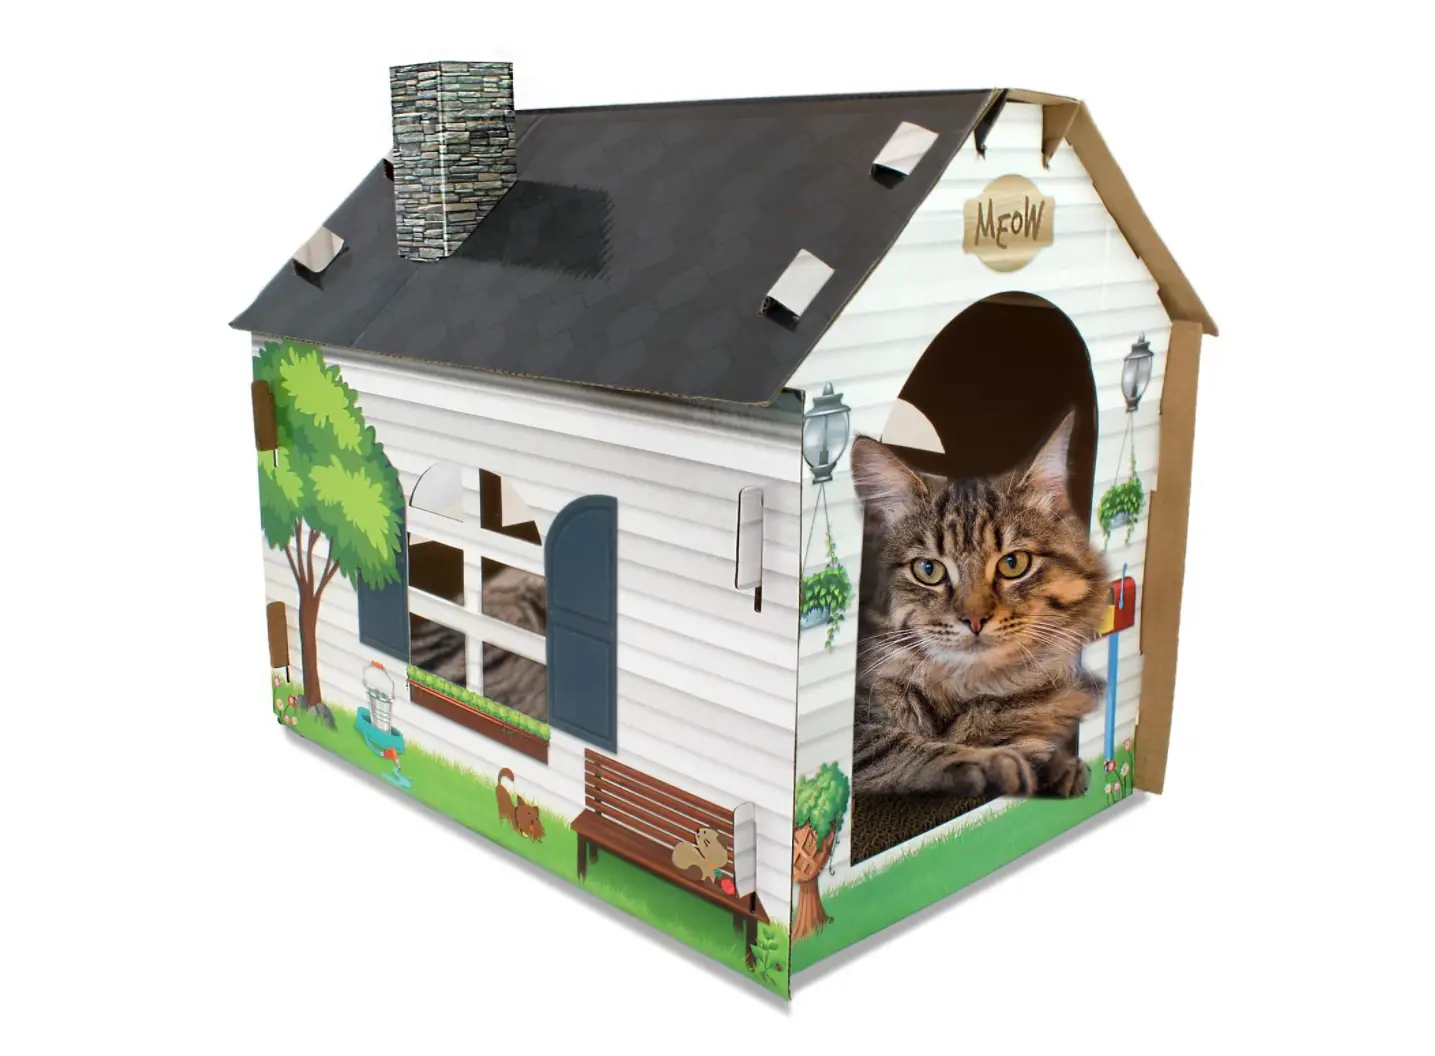 ASPCA Cat House & Scratcher